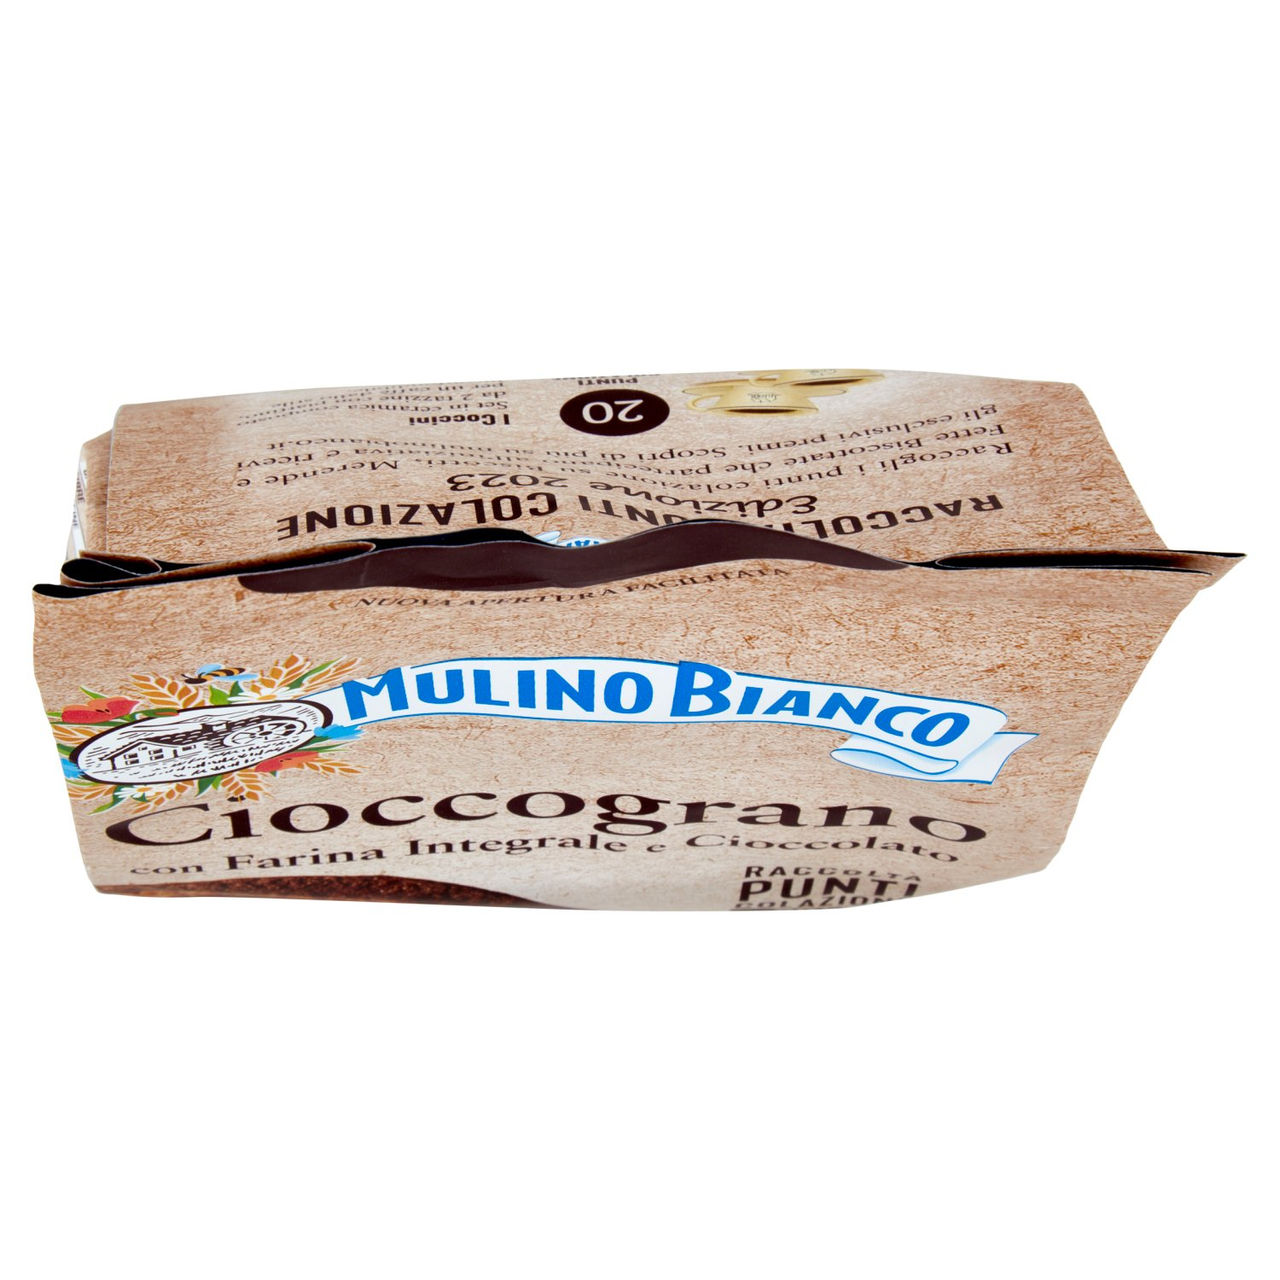 Mulino Bianco Cioccograno in vendita online